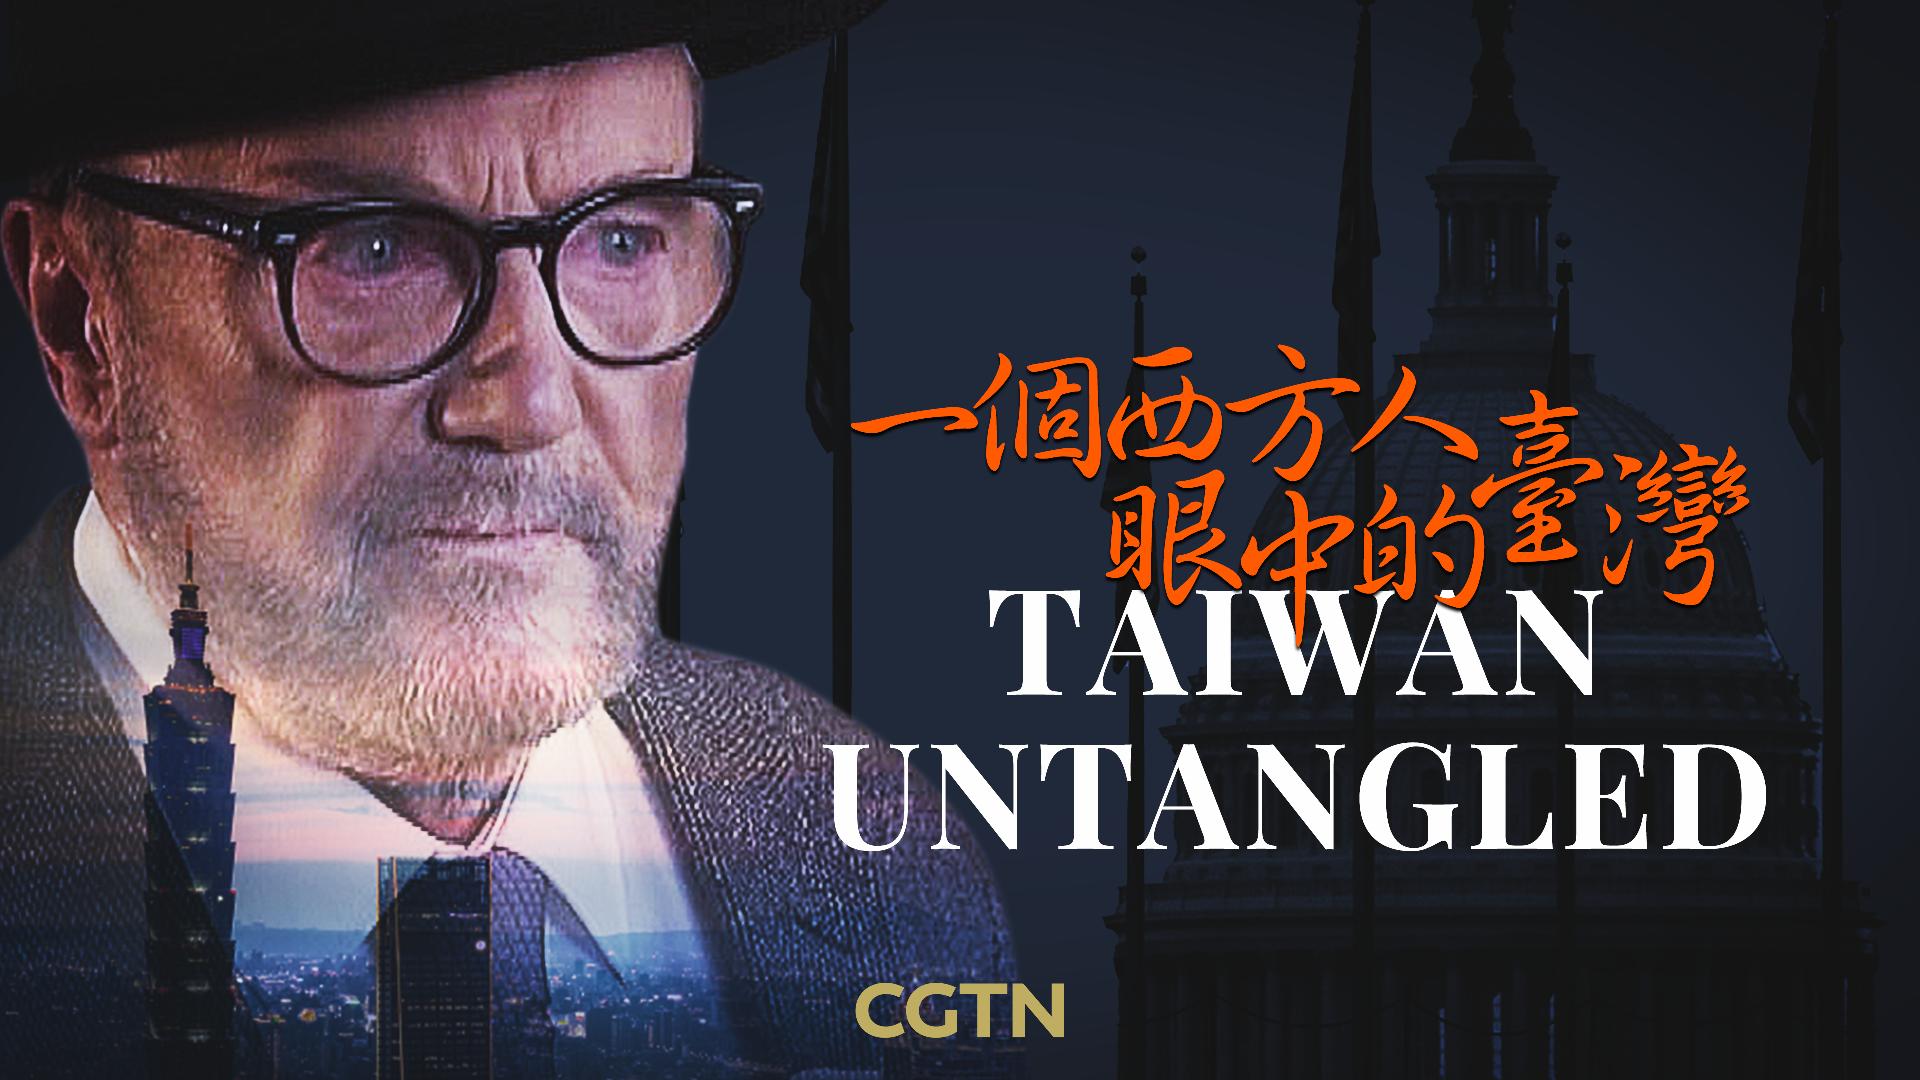 Taiwan Untangled – CGTN [Video]